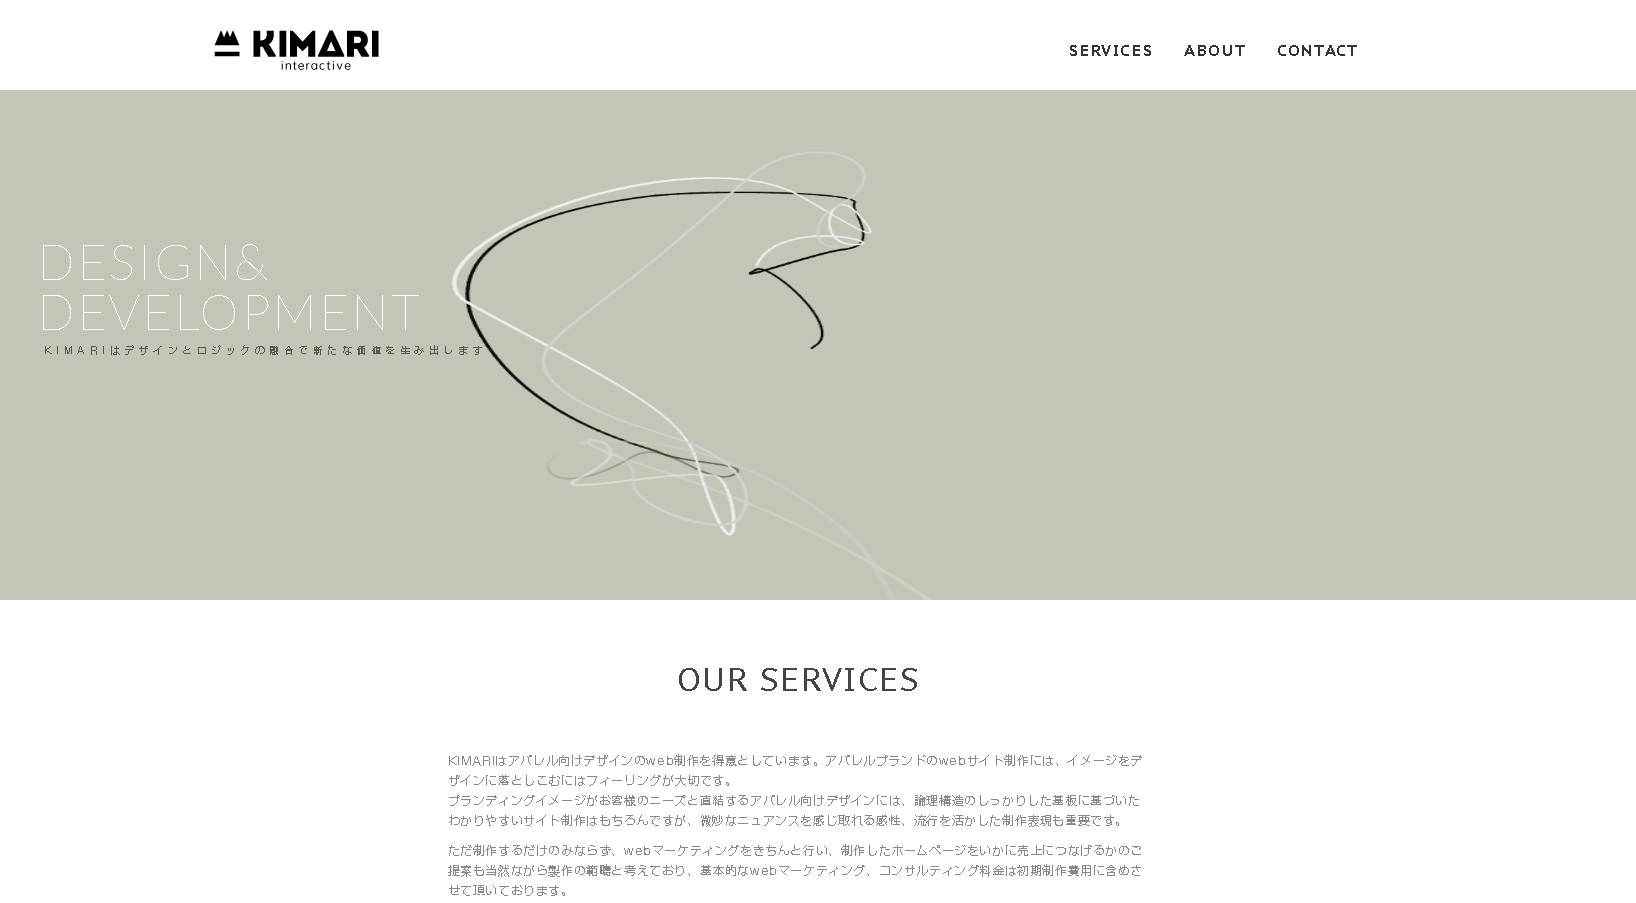 kimari interactiveのkimari interactiveサービス